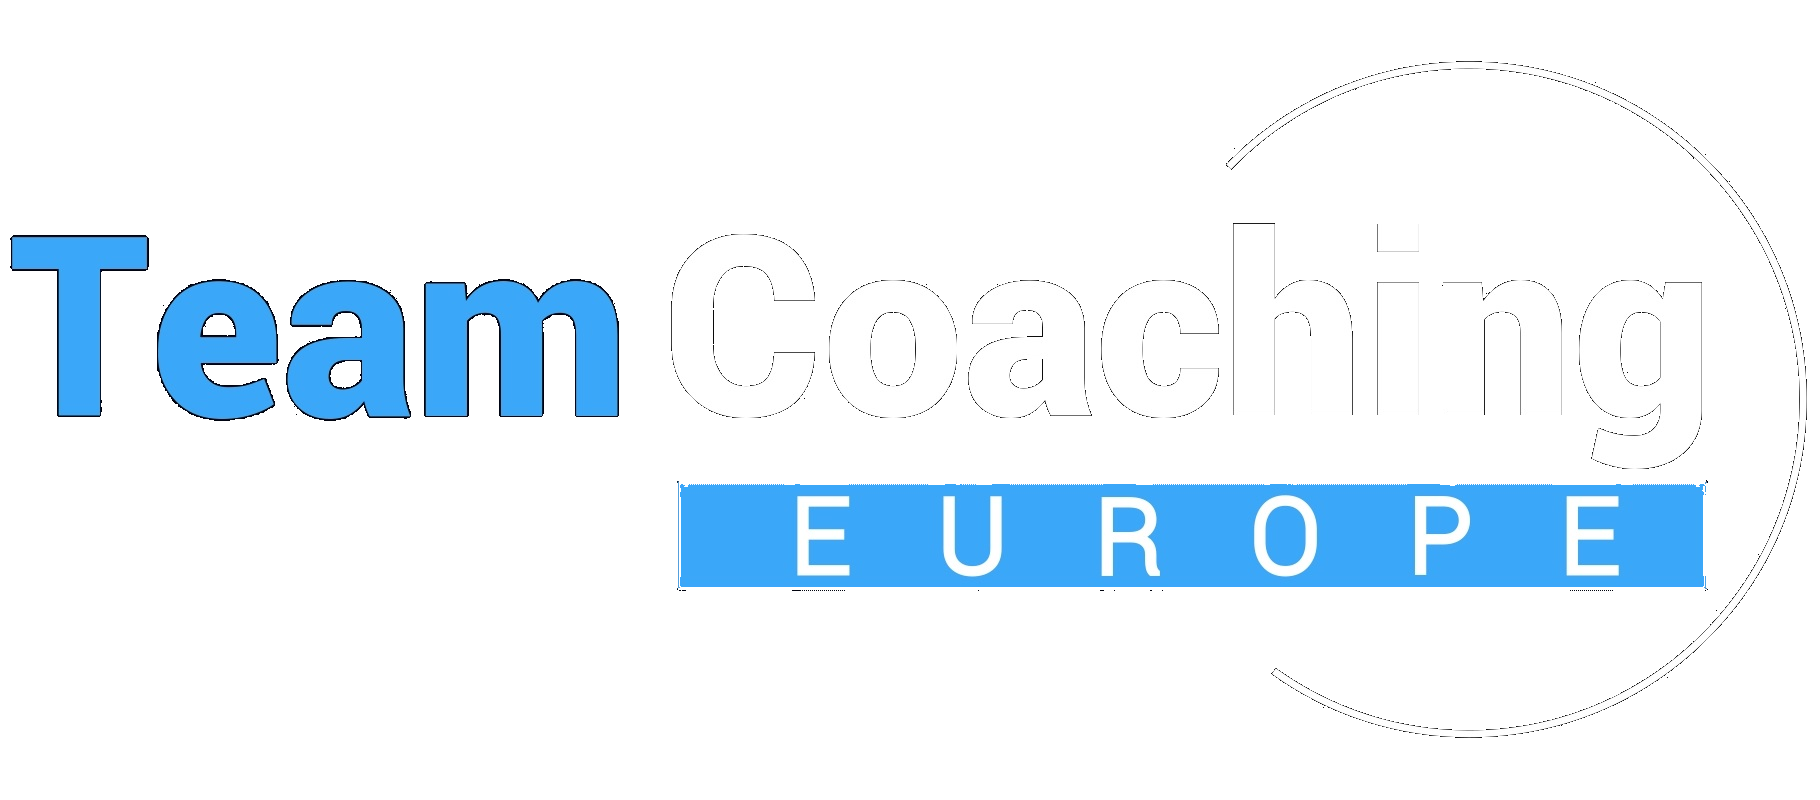 Teamcoaching Europe